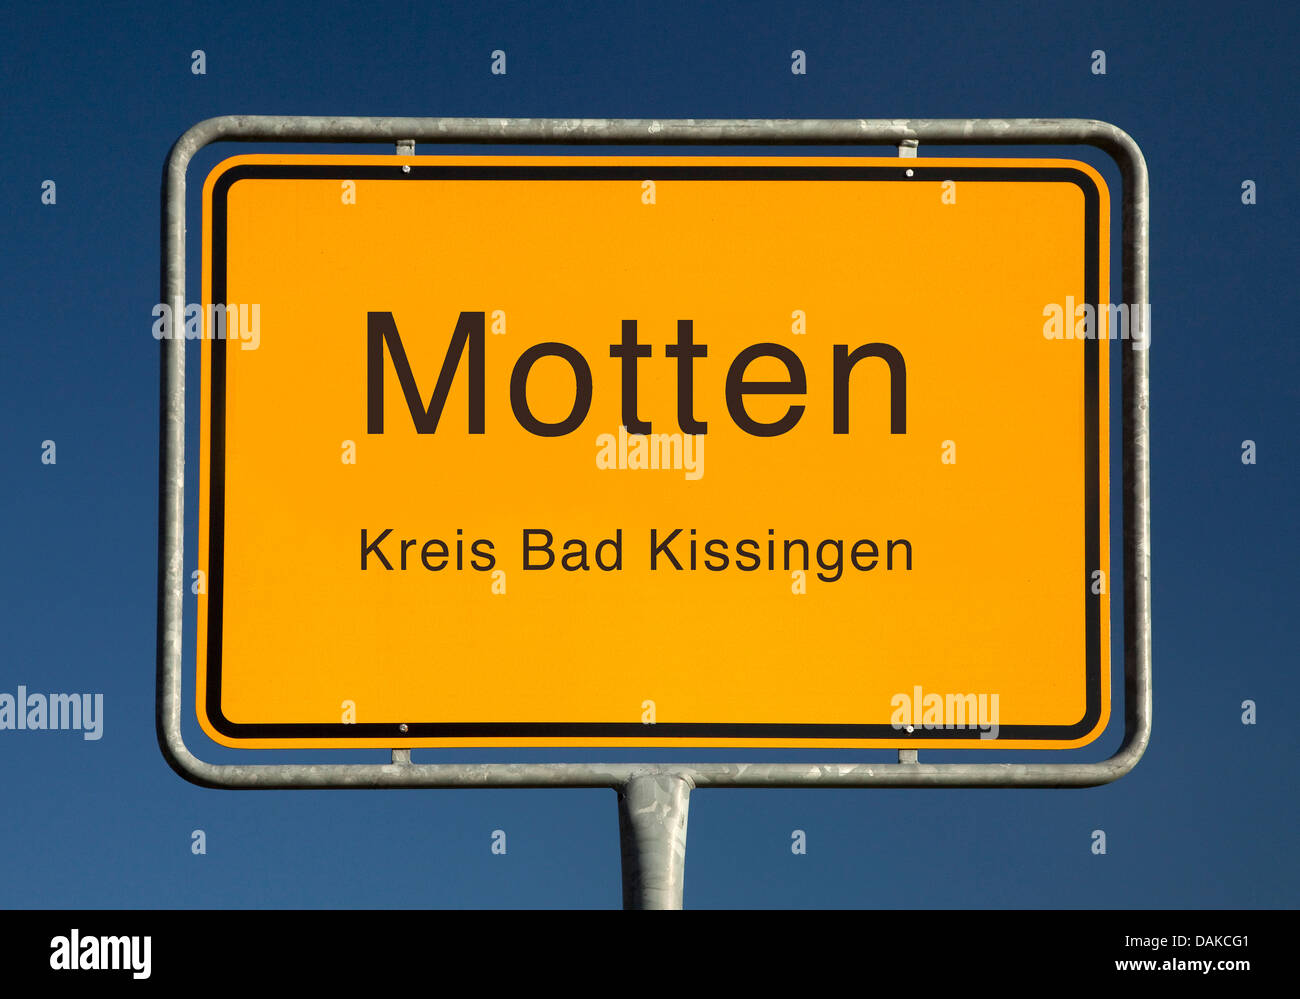 Motten place name sign, Germany, Bavaria, Kreis Bad Kissingen, Motten Stock Photo